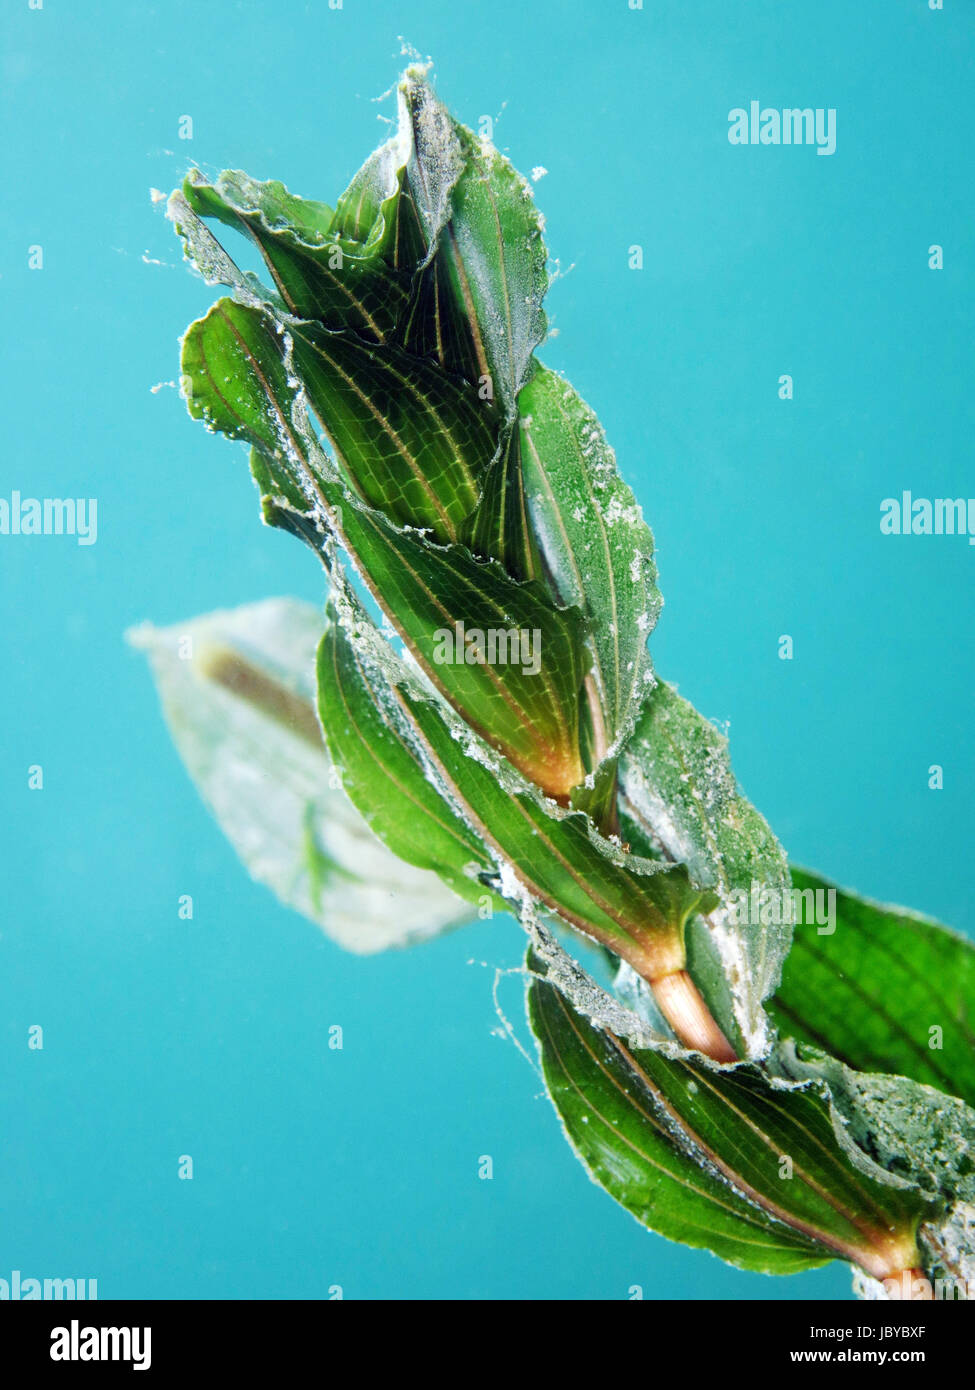 Durchwachsenes Laichkraut (Potamogeton perfoliatus) Stock Photo